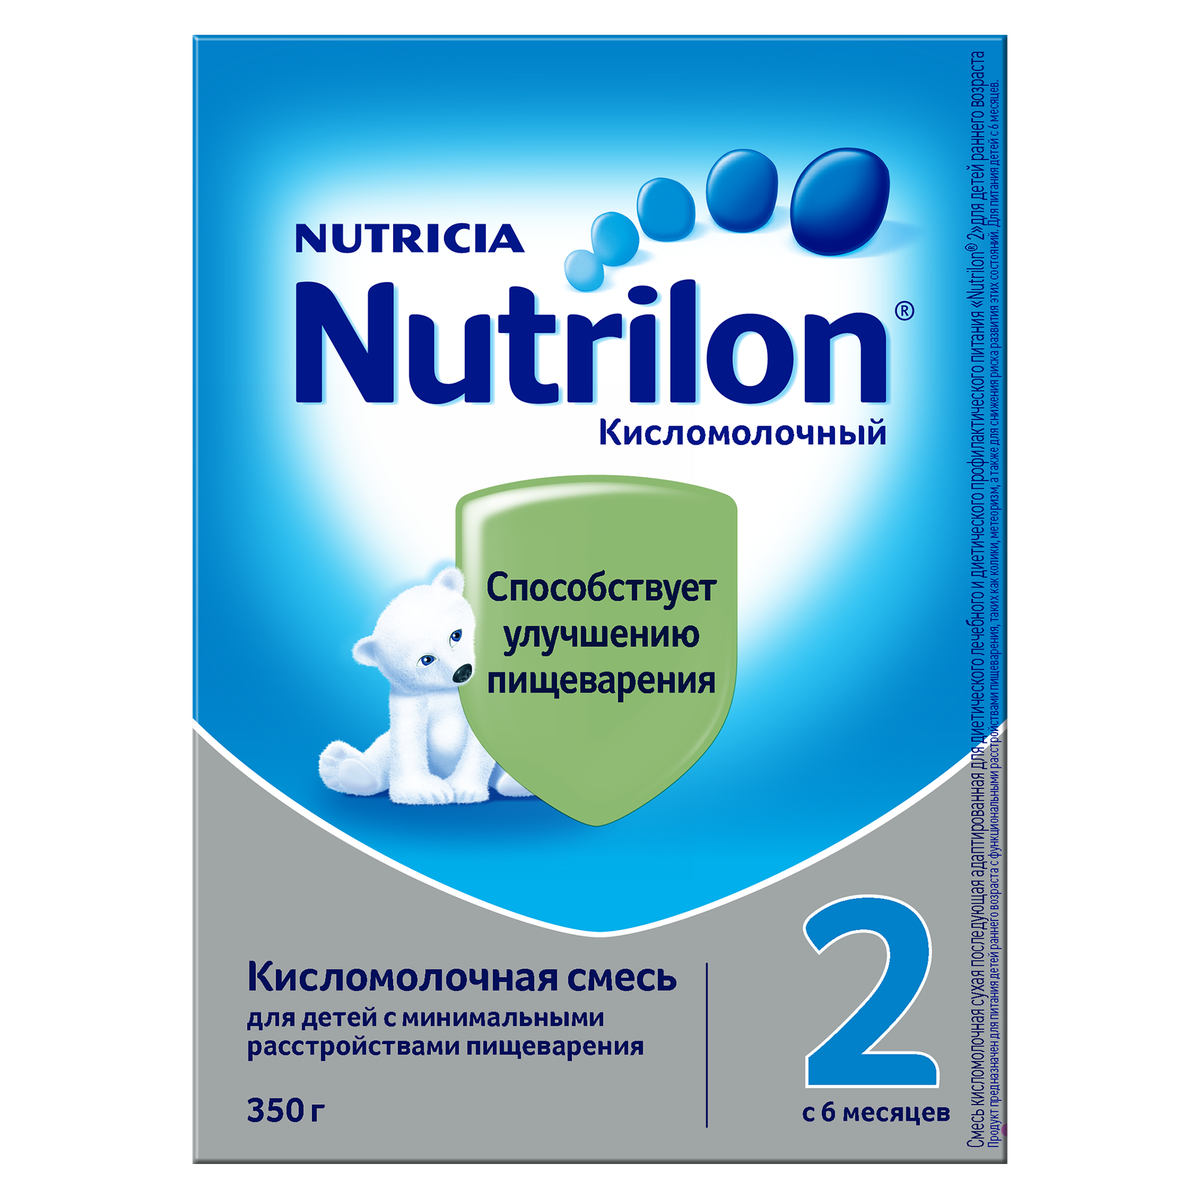 Нутрилон 2 кисломолочный (смесь, 1 шт, 350 г) - цена,  онлайн в .